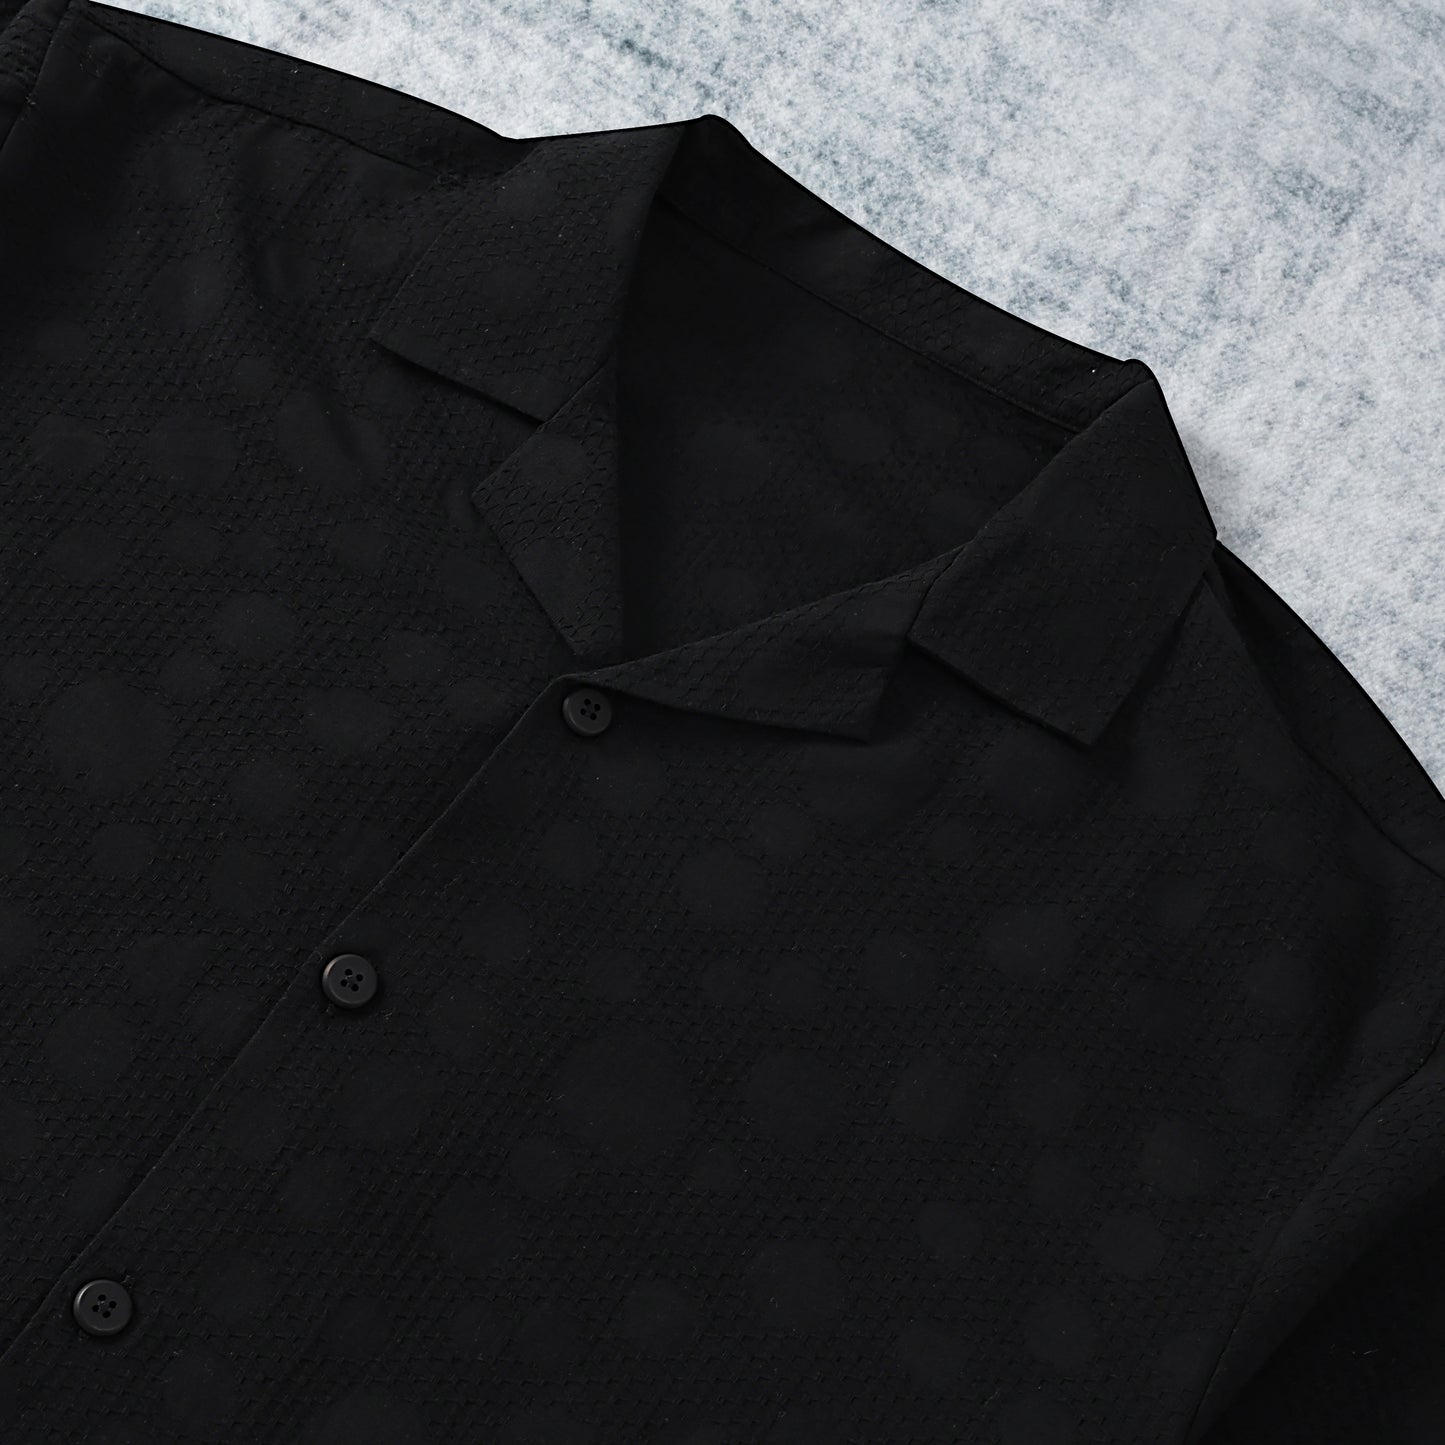 Black Crochet Textured Camp Collar Short Sleeve Shirt